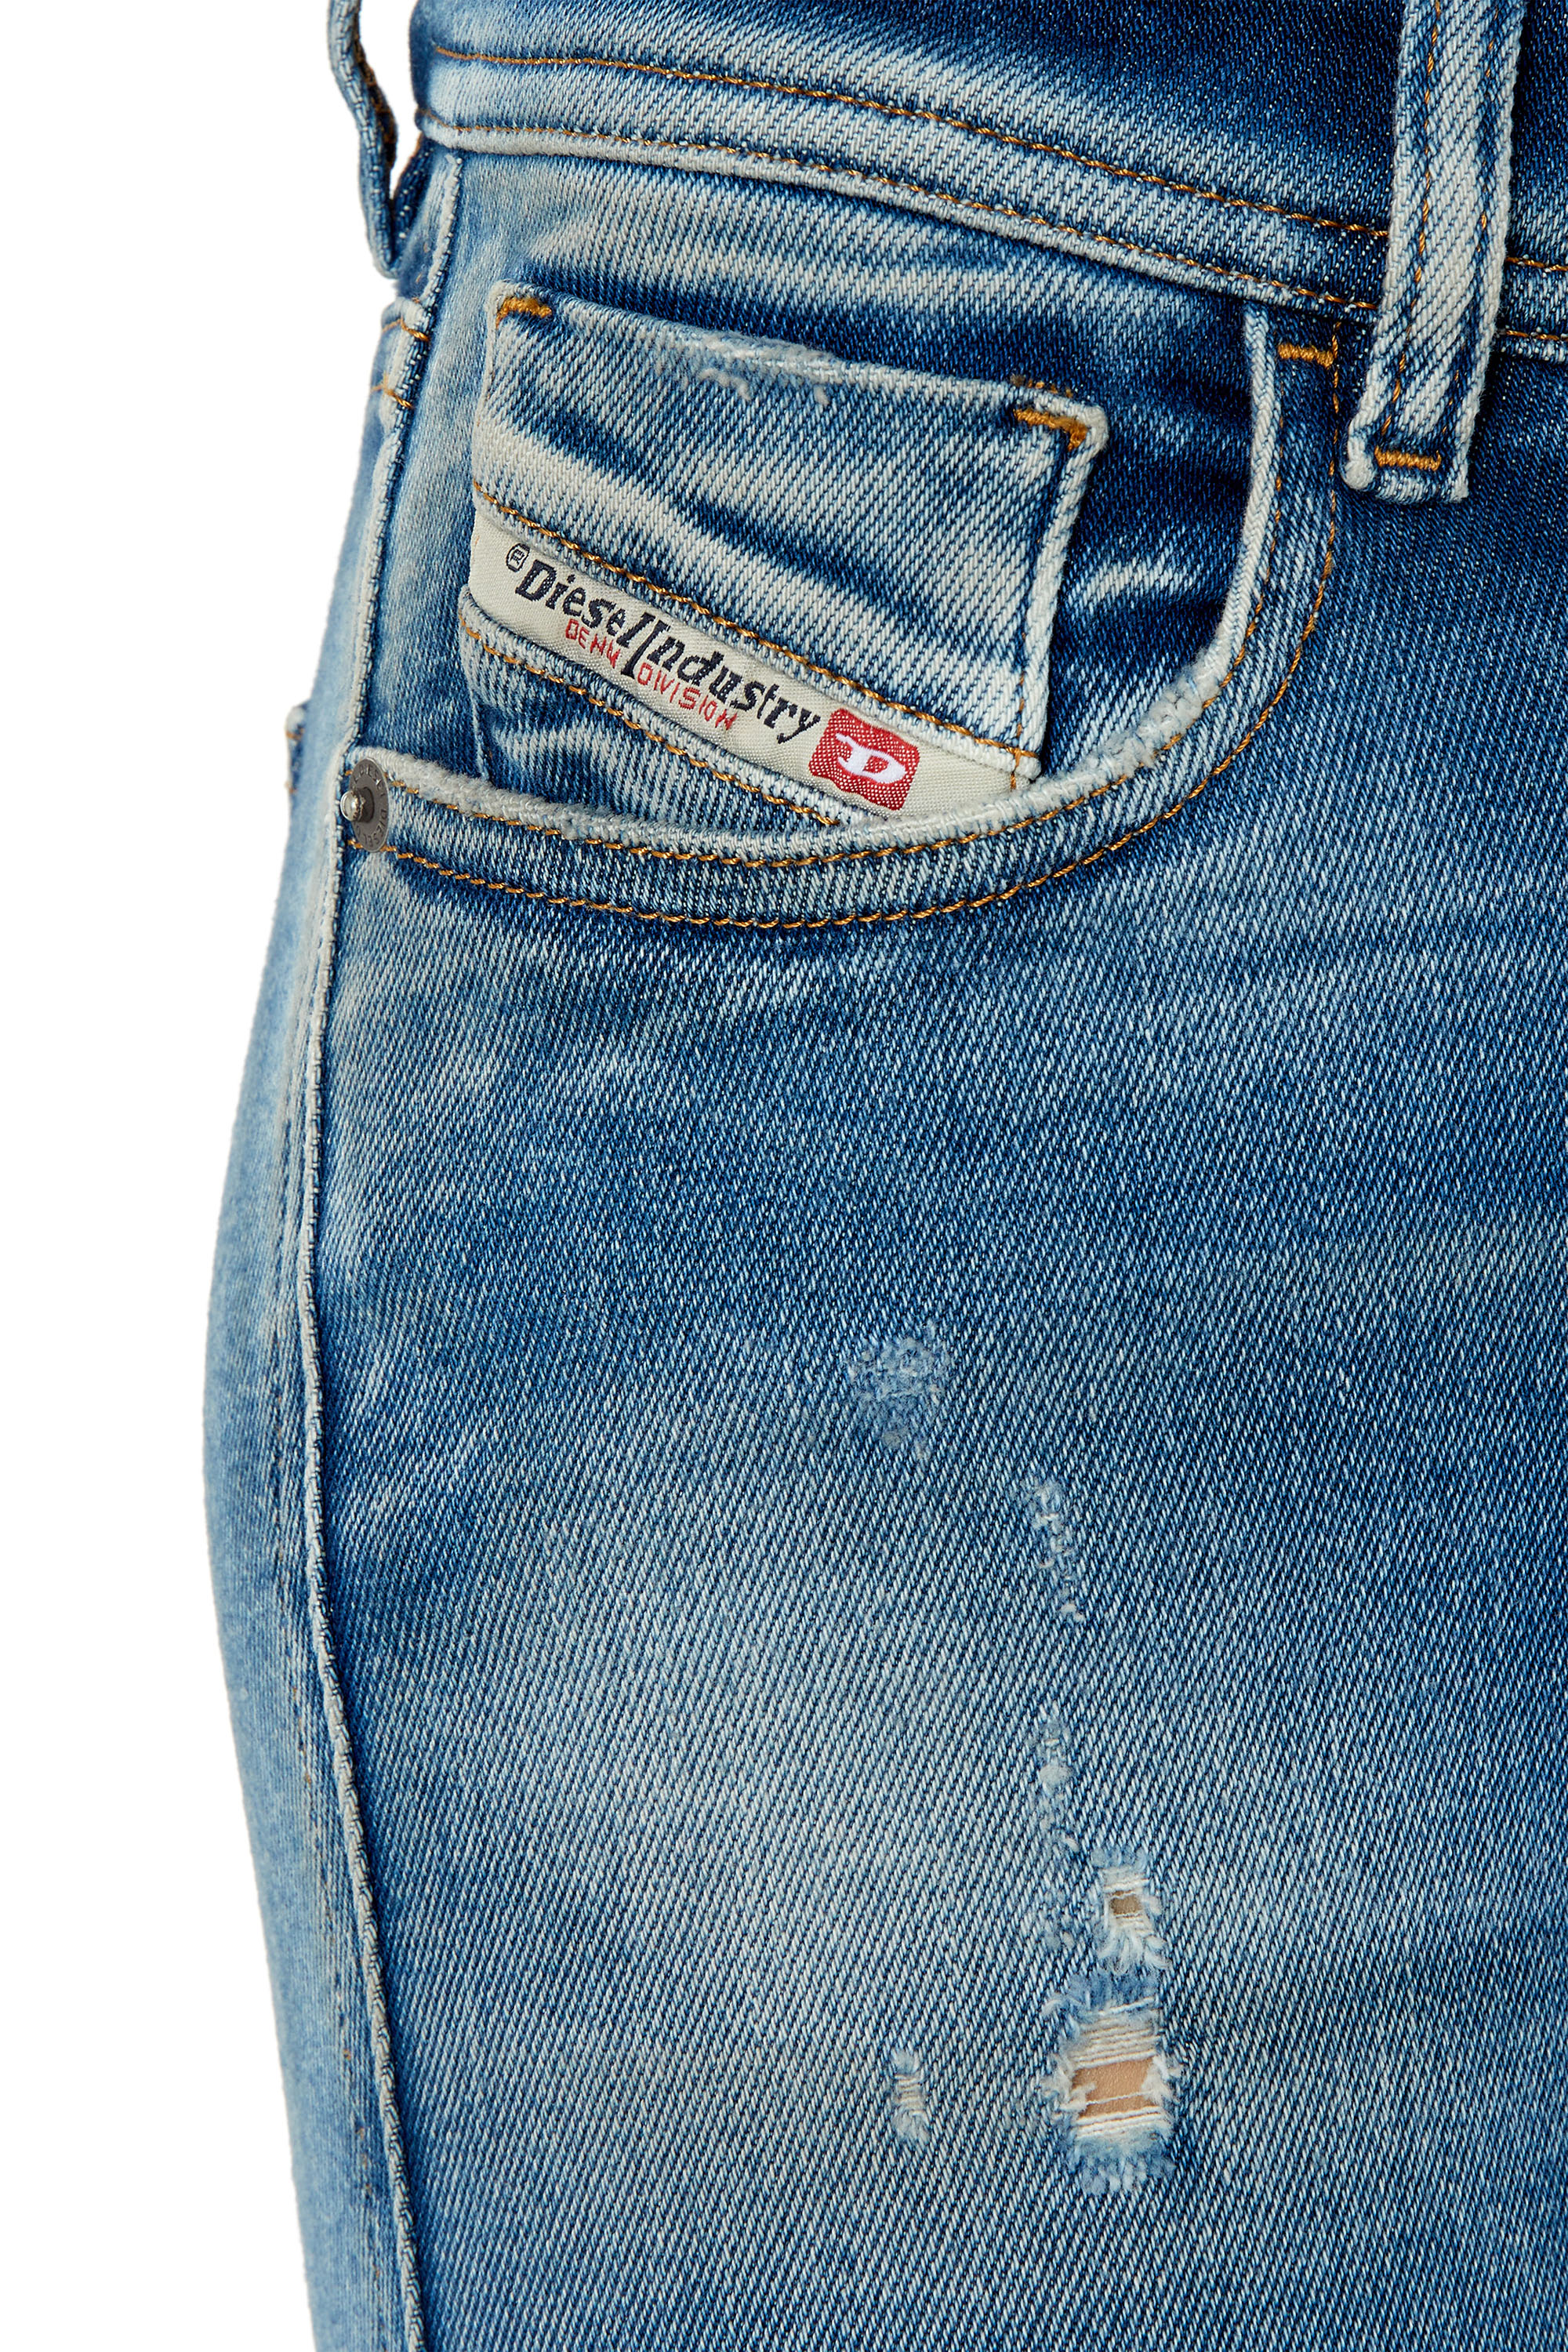 Diesel - Super skinny Jeans 2017 Slandy 09E91, Hellblau - Image 3